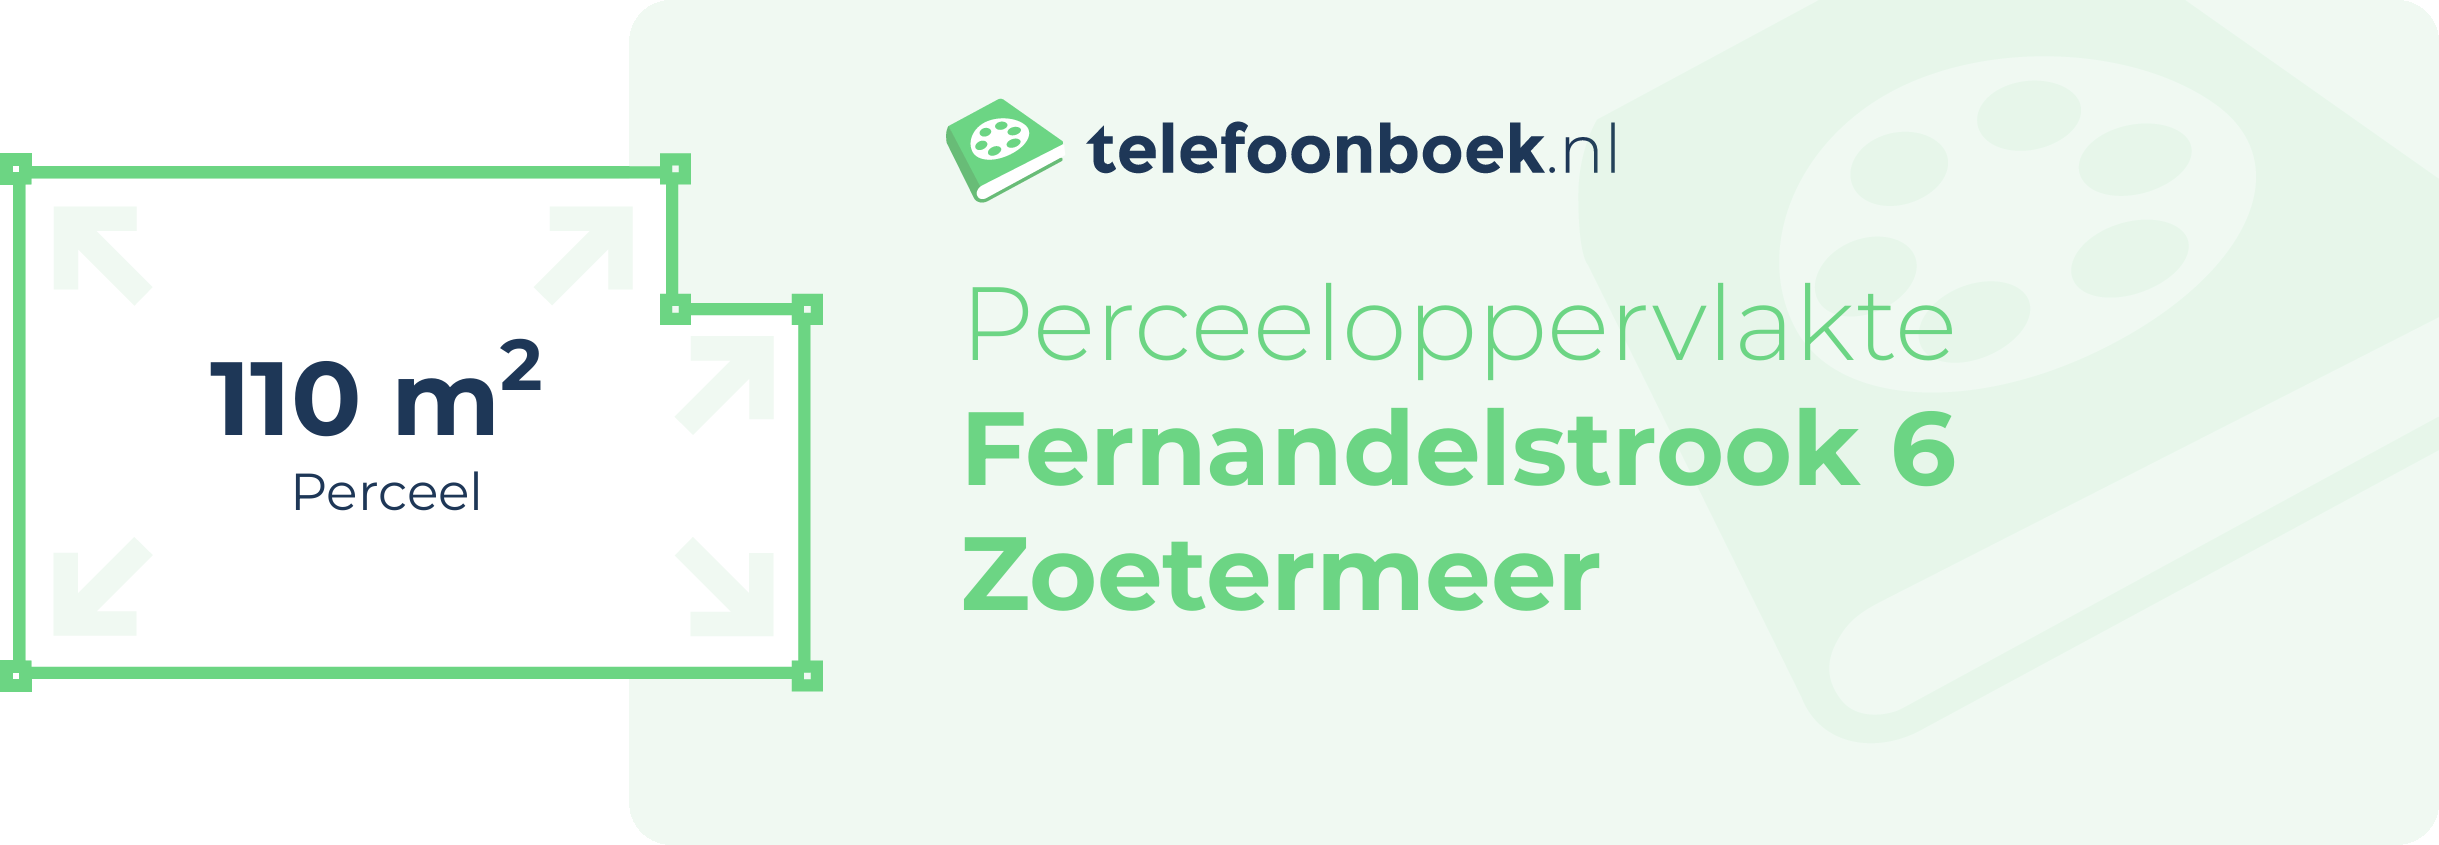 Perceeloppervlakte Fernandelstrook 6 Zoetermeer